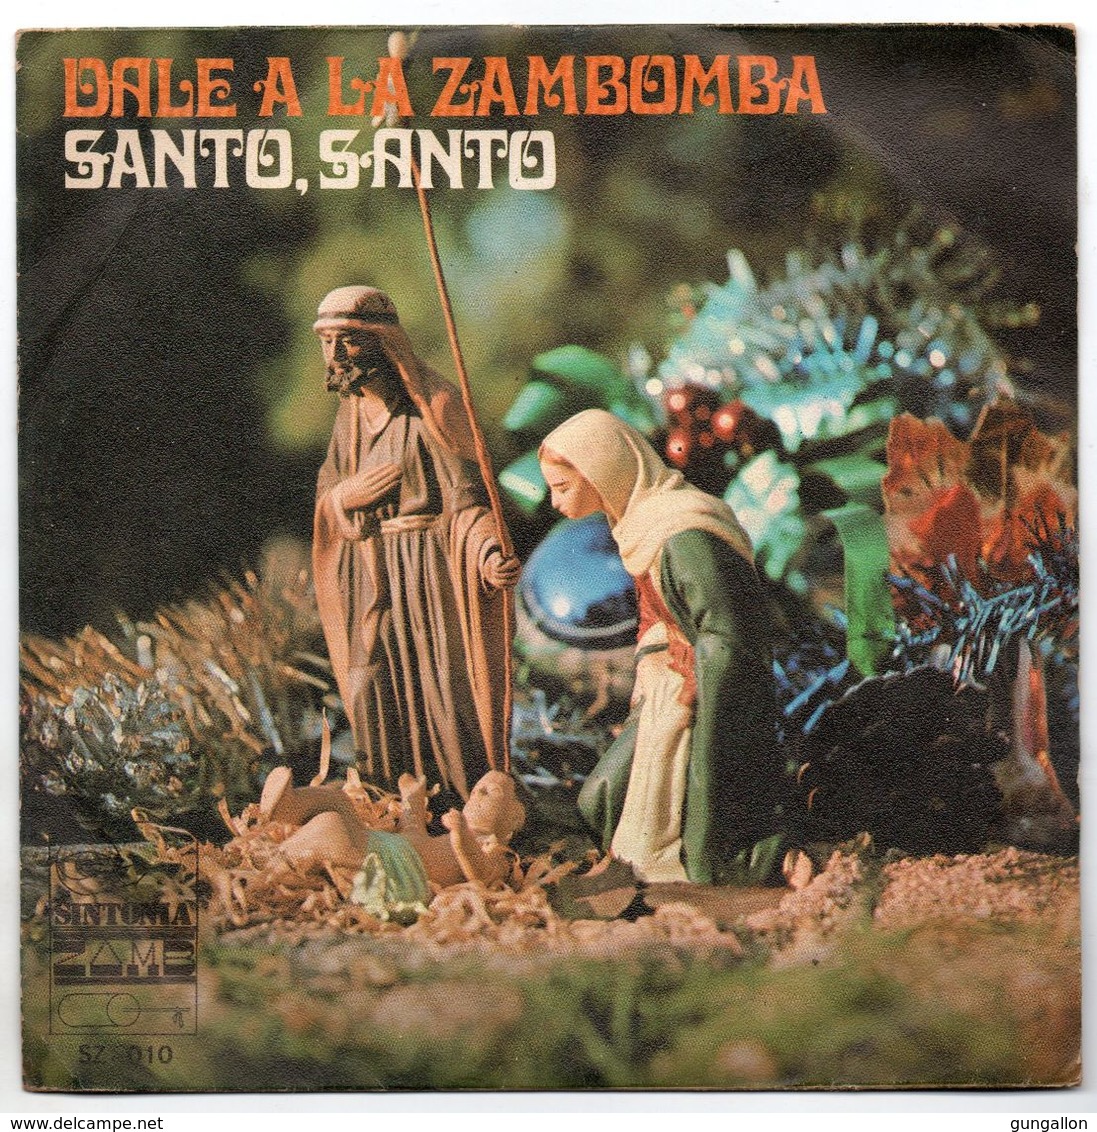 Gruppo Flamenco De Torres Bermajas  (1970)  "Santo  Santo  Santo" - Strumentali